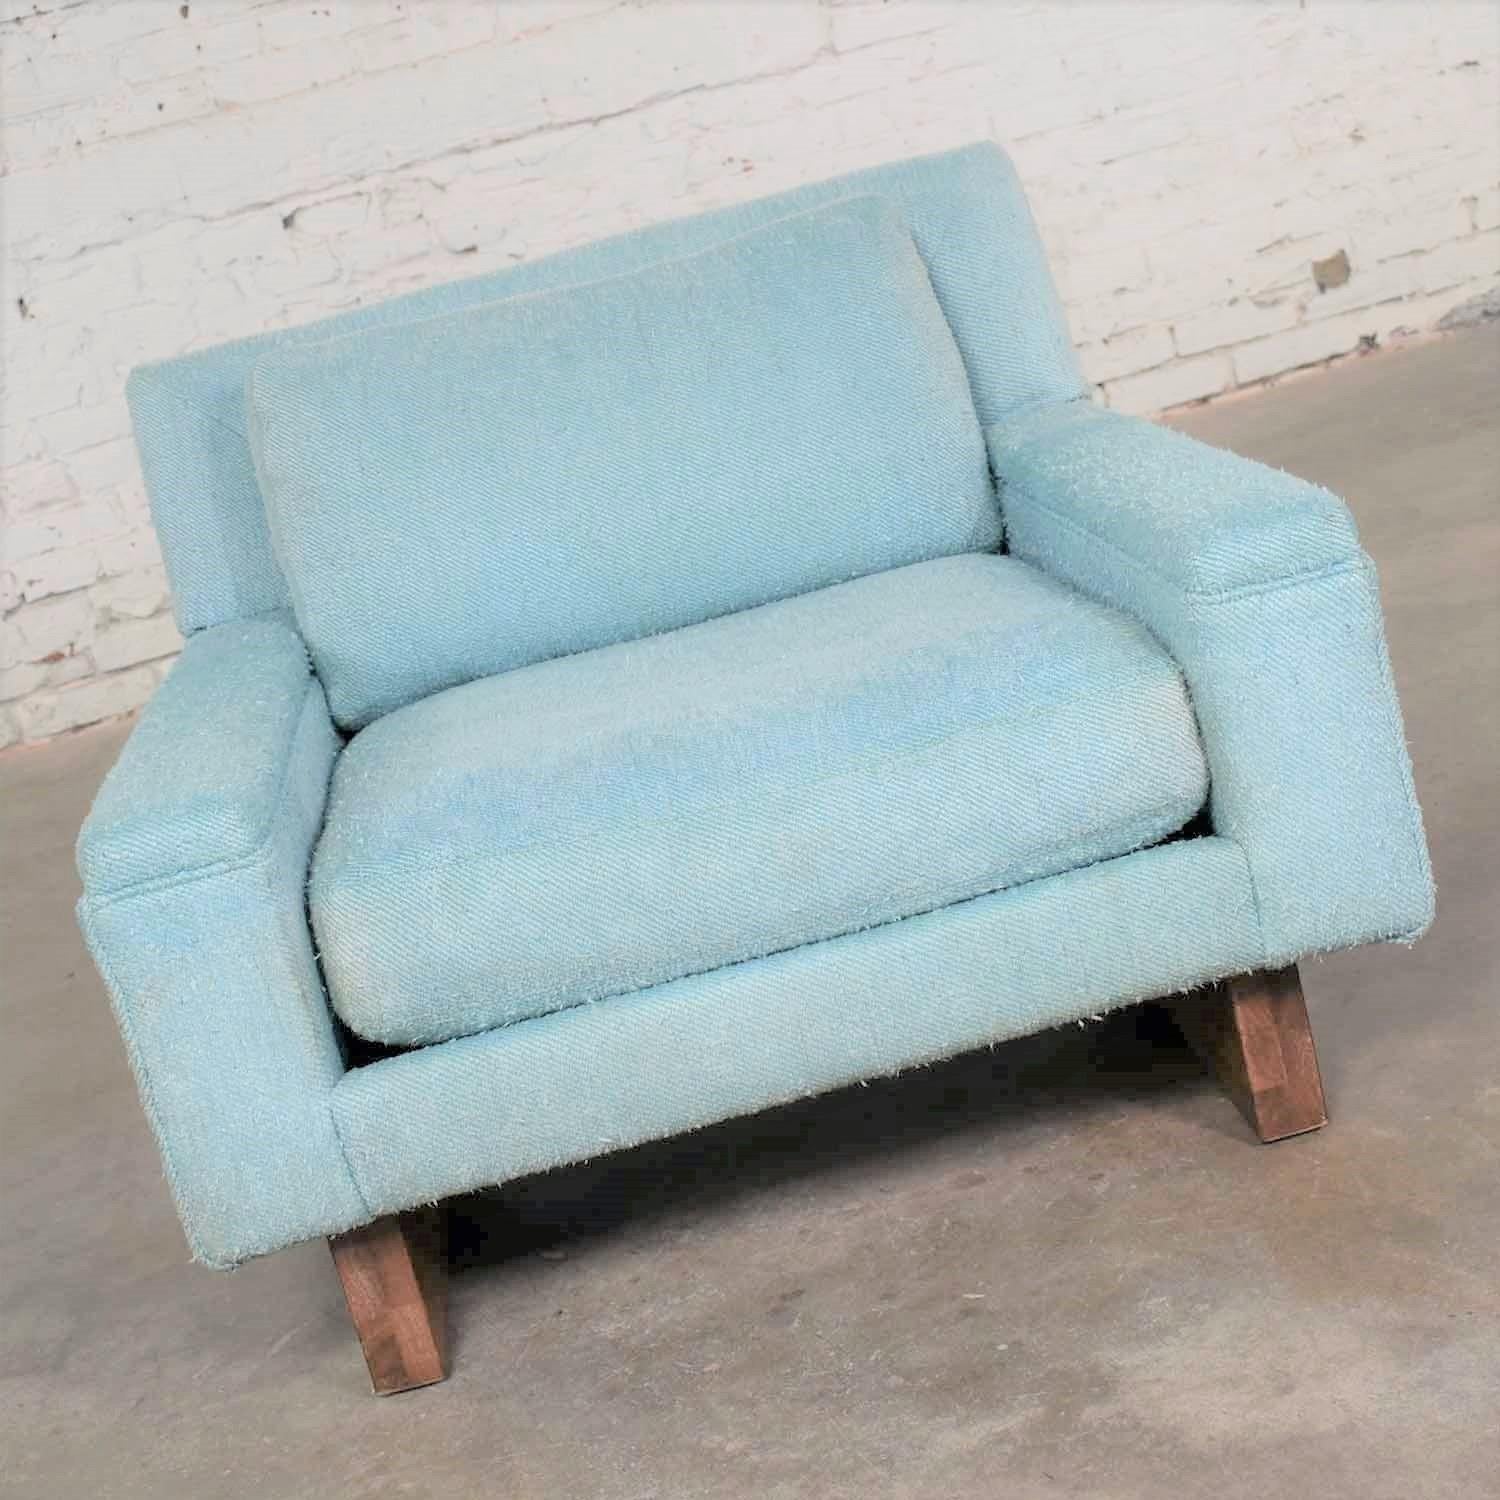 Schöner Mid-Century Modern Club Chair oder Lounge Chair aus der Flair Division von Bernhardt Furniture. Es ist in einem wunderbaren Vintage-Zustand und trägt seinen originalen helltürkisblauen Noppenstoff. Es wurde professionell gereinigt, aber der